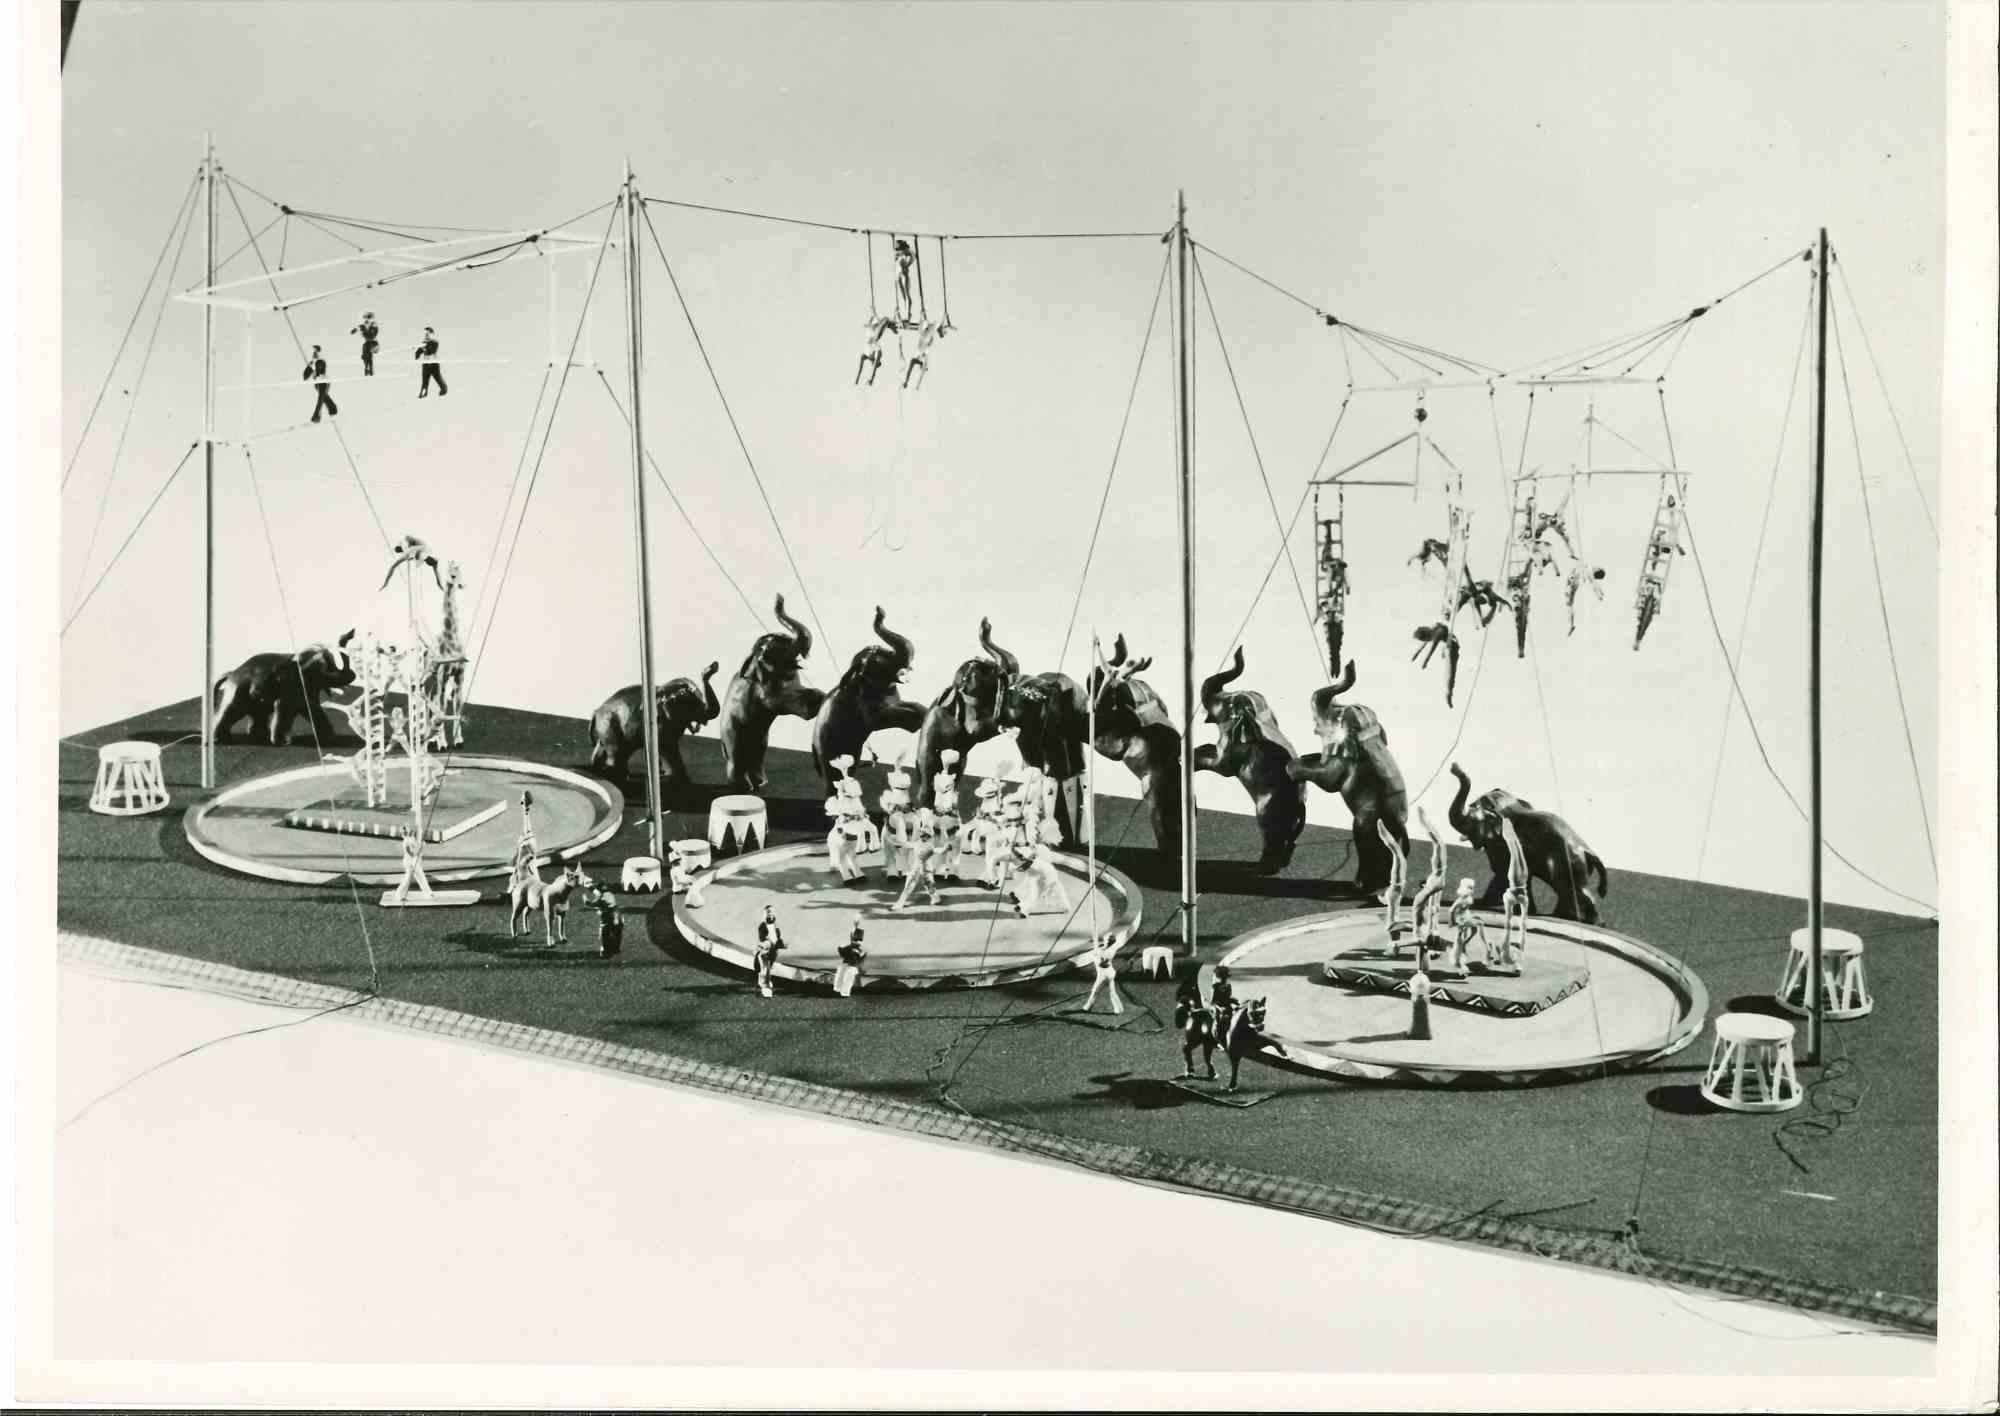 Figurative Photograph Unknown - Modèle de bâtiment de cirque récaptures le passé - Photographie vintage du milieu du XXe siècle